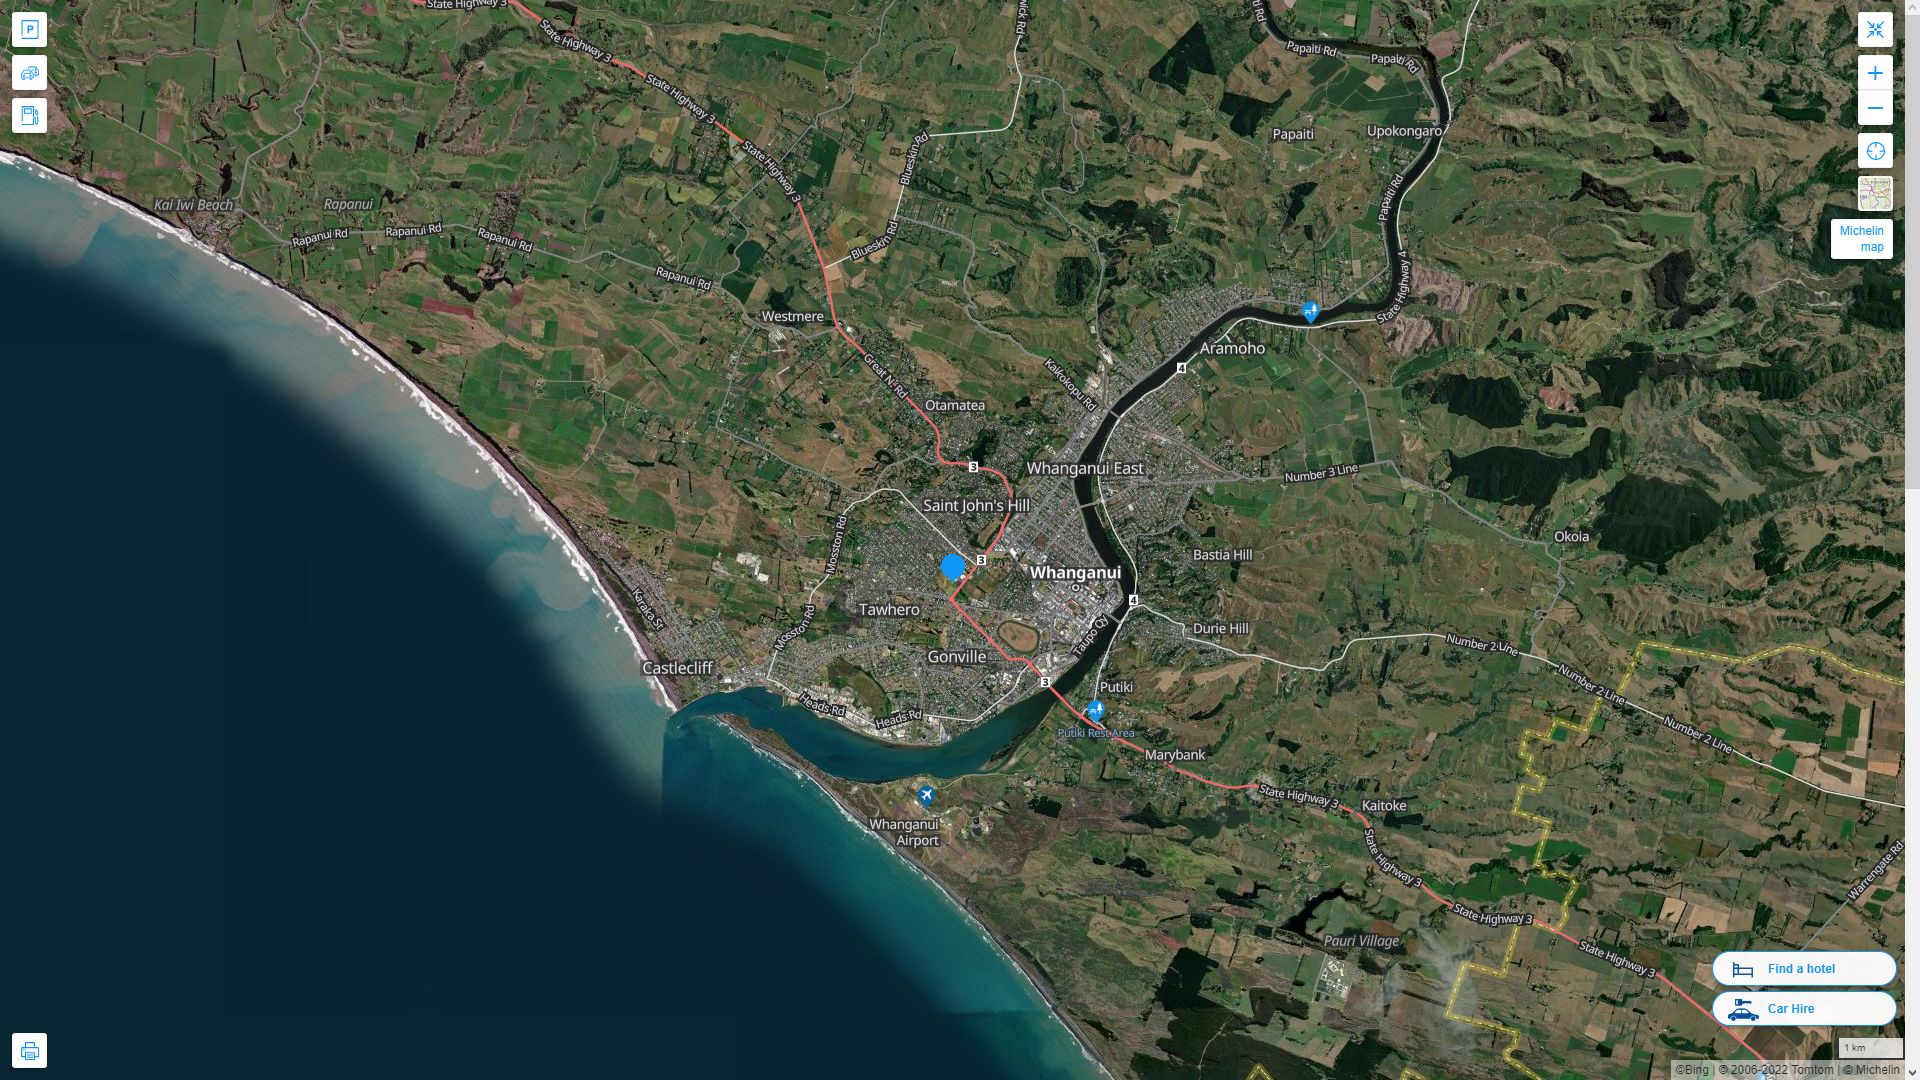 Whanganui Nouvelle Zelande Autoroute et carte routiere avec vue satellite